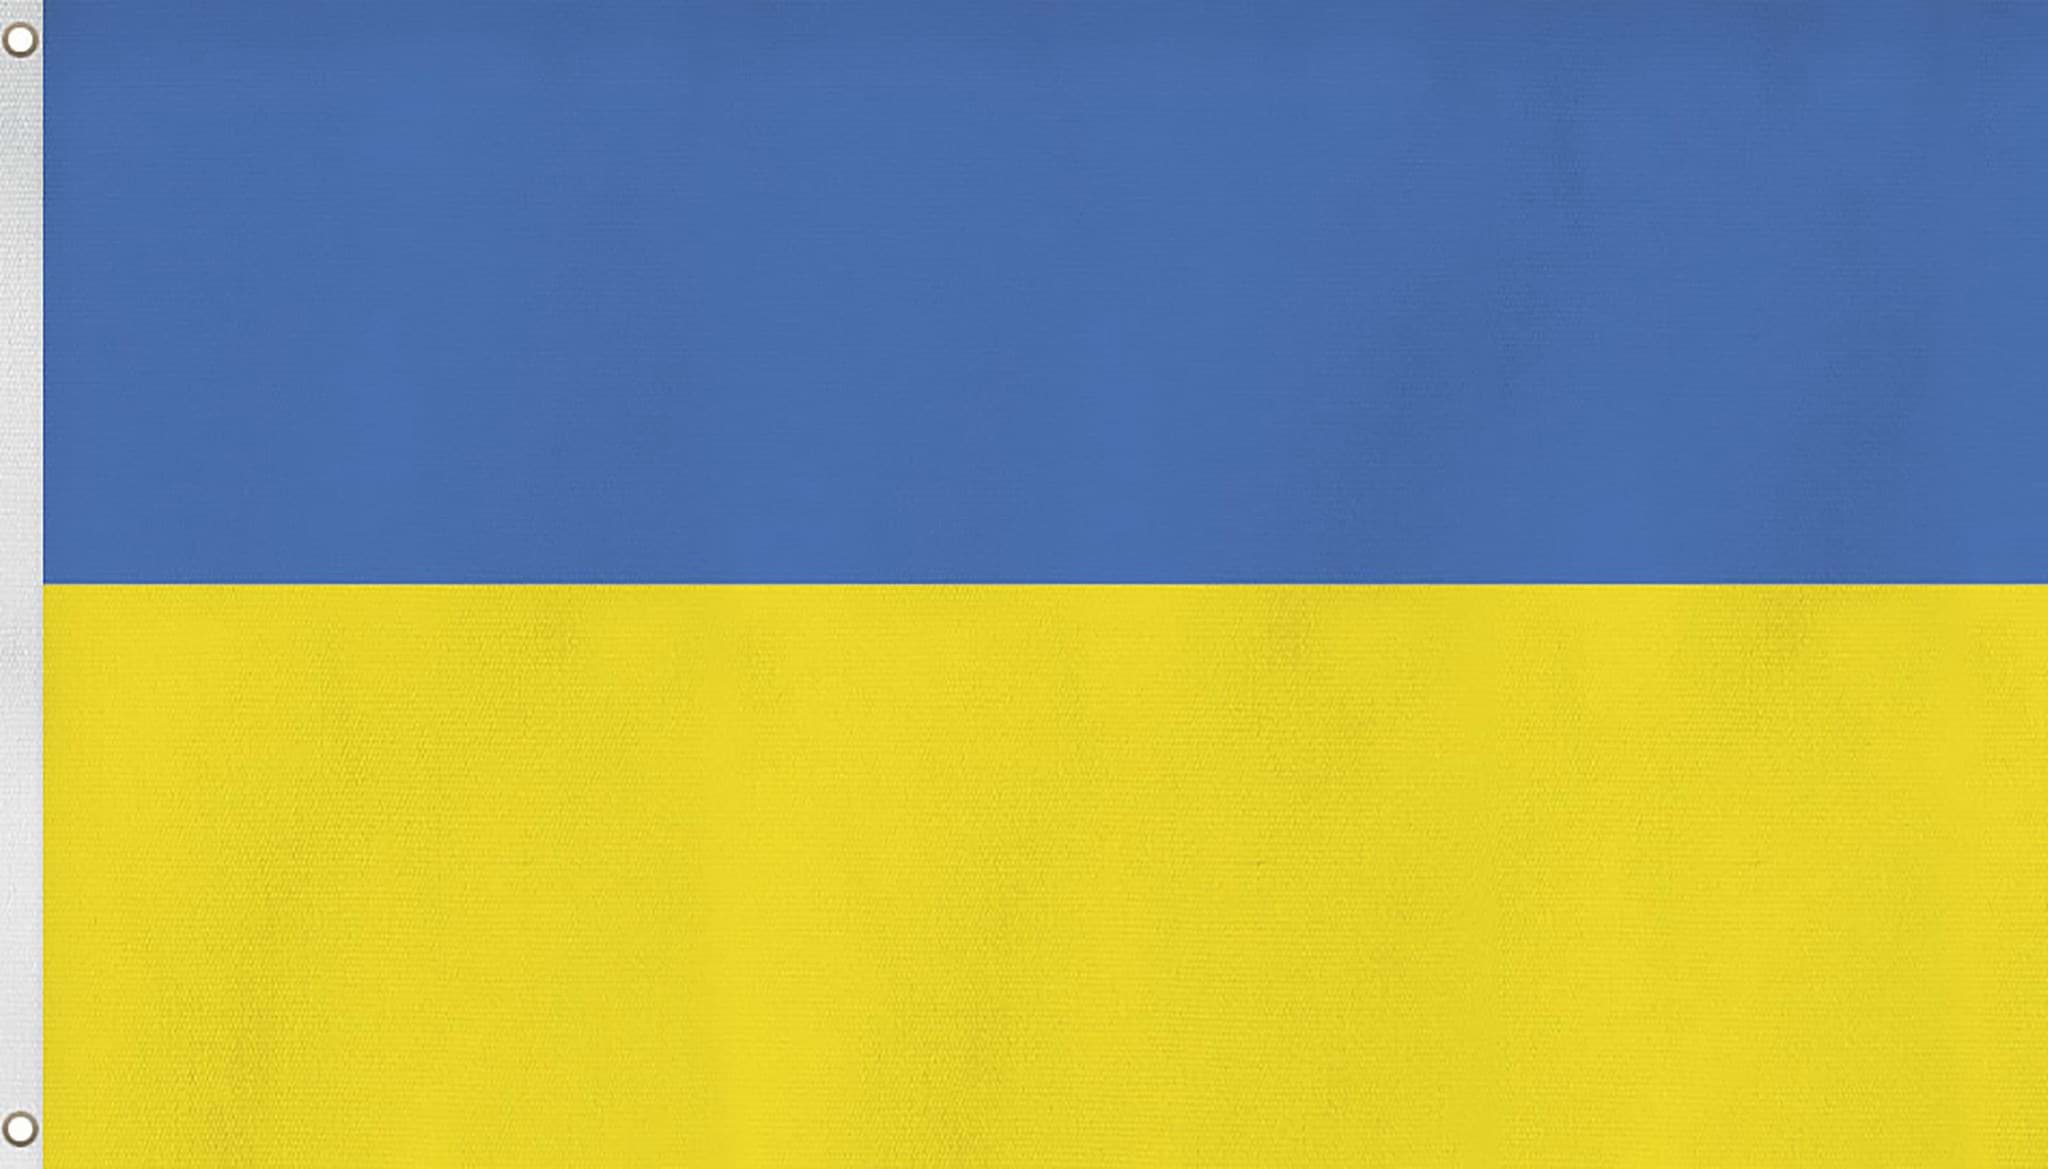 Bild von Fahne Länderflagge 90 cm x 150 cm Ukraine